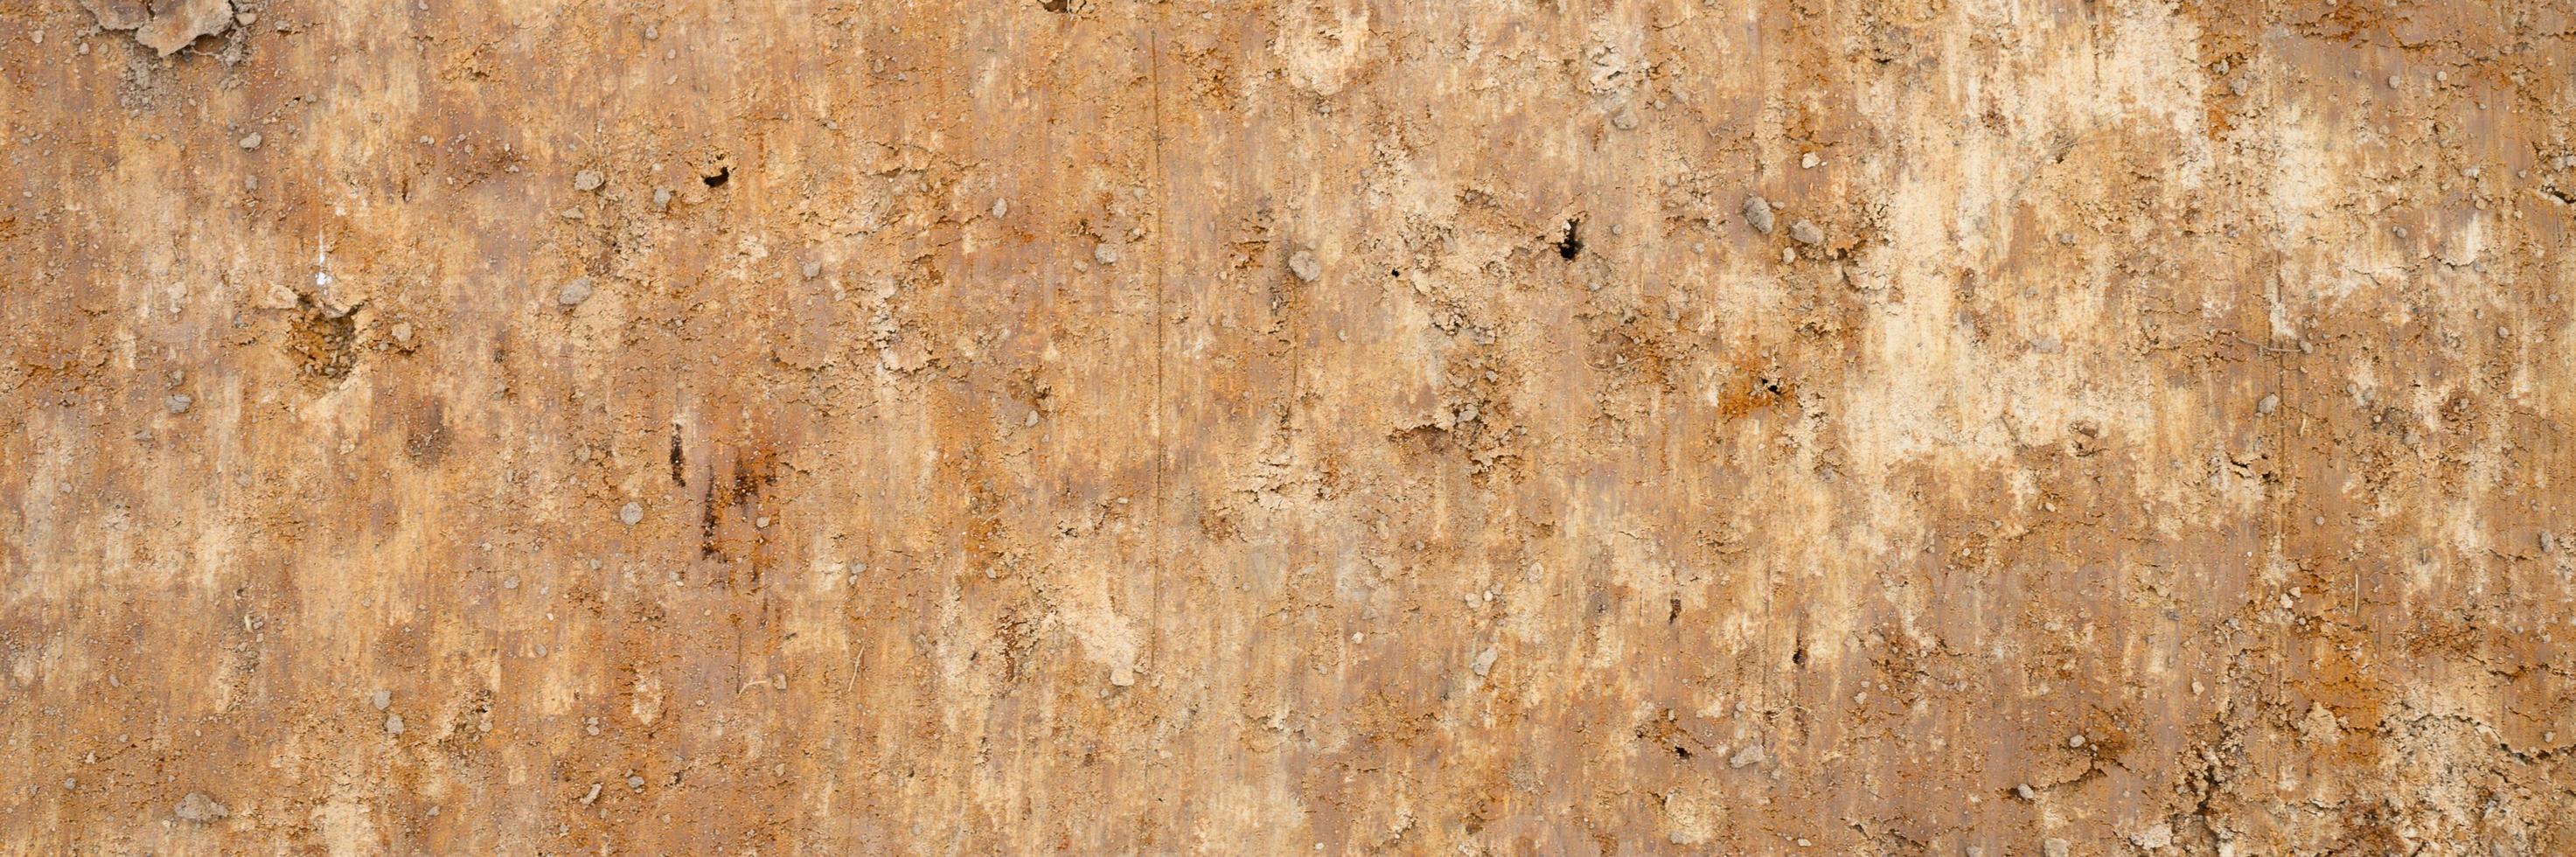 texture de fond de la surface lisse du sable de bois photo